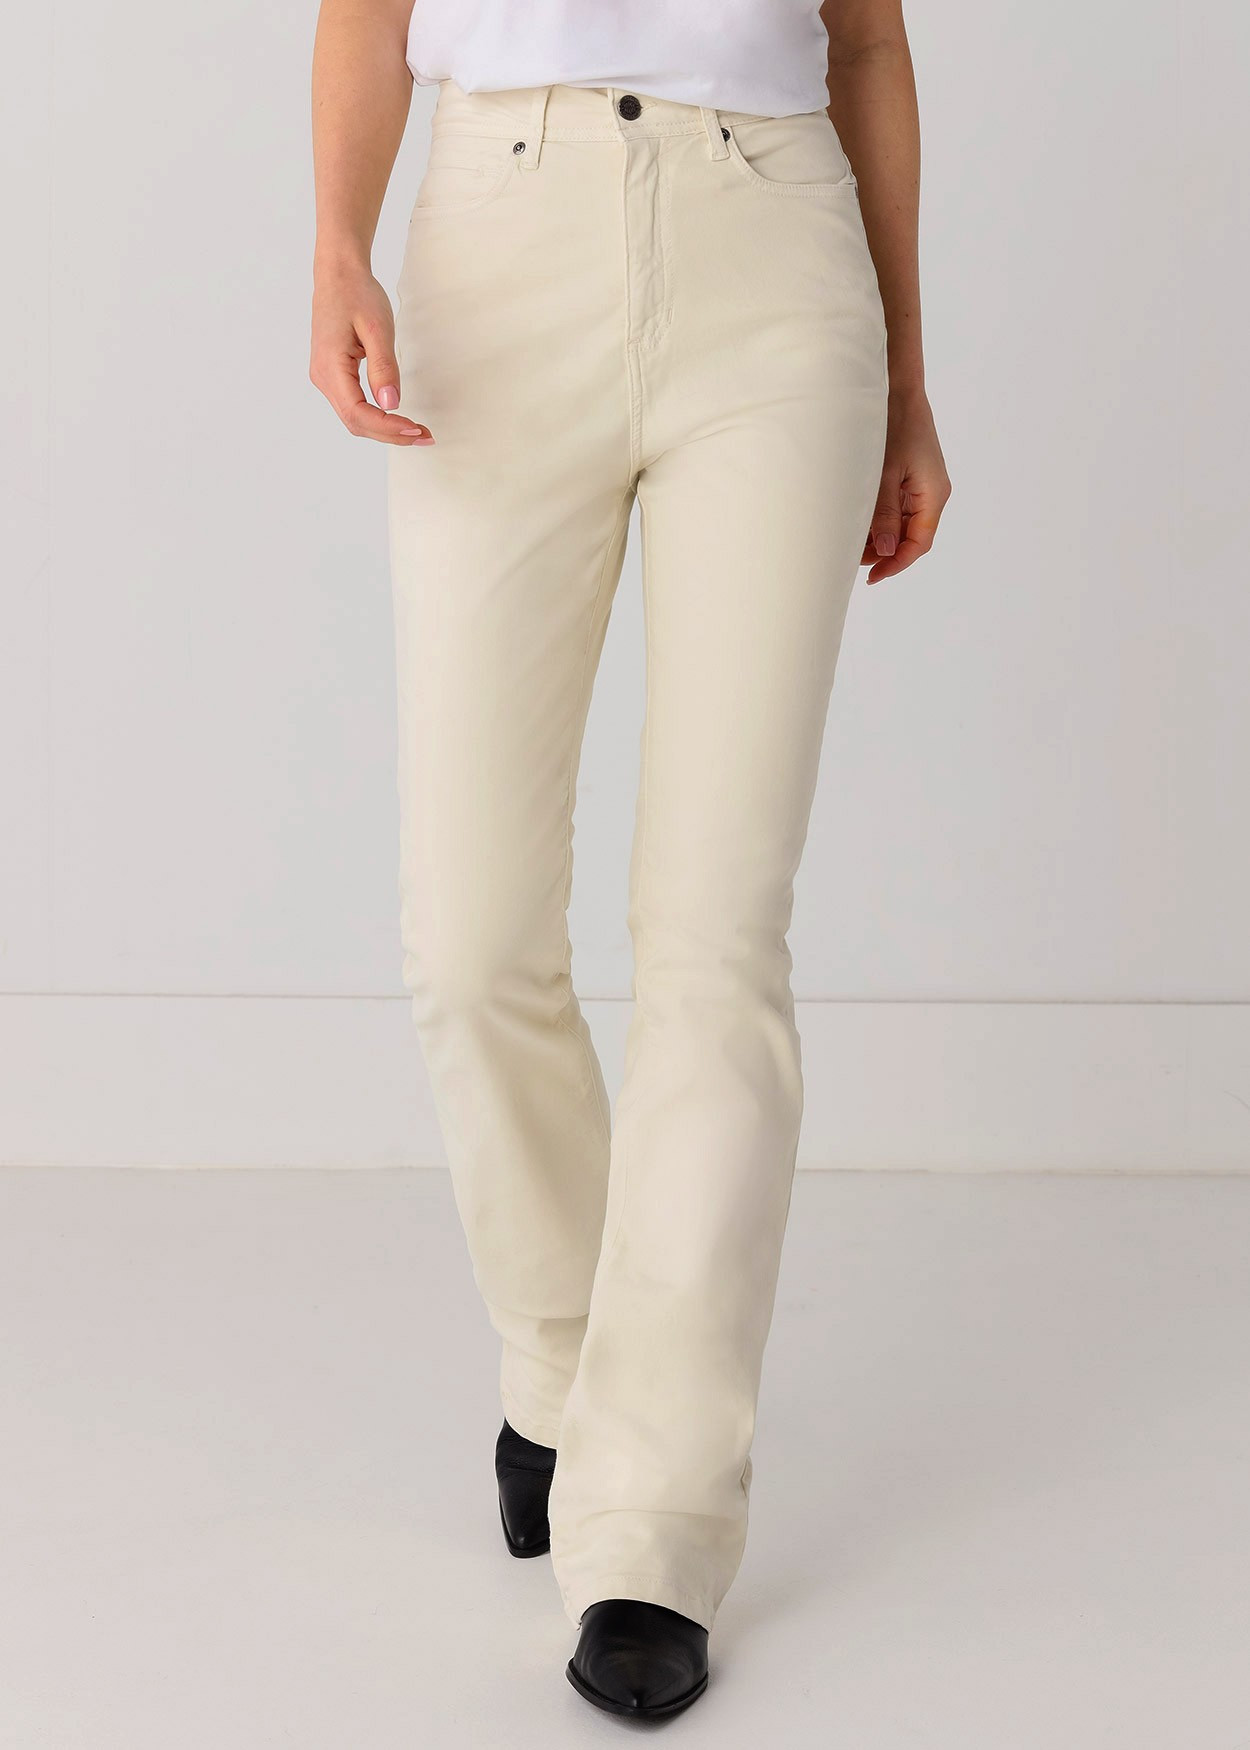 Pantalon de couleur Gracia-Nectar | Taille haute - Boot Cut | Taille en pouces Cimarron